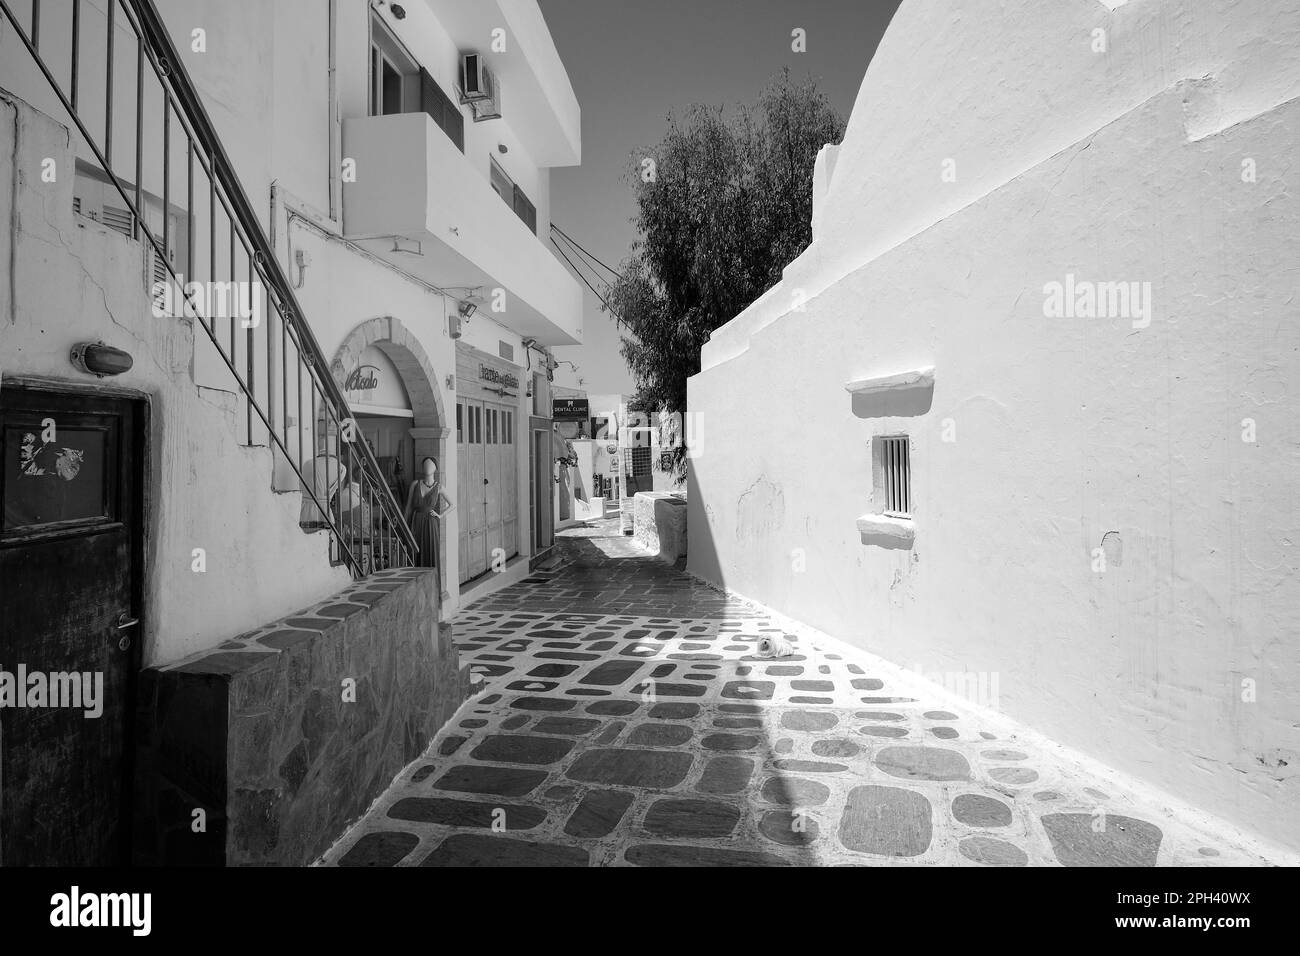 IOS, Grèce : 26 mai 2021 : vue sur une allée typique de l'île pittoresque d'iOS Grèce en noir et blanc Banque D'Images